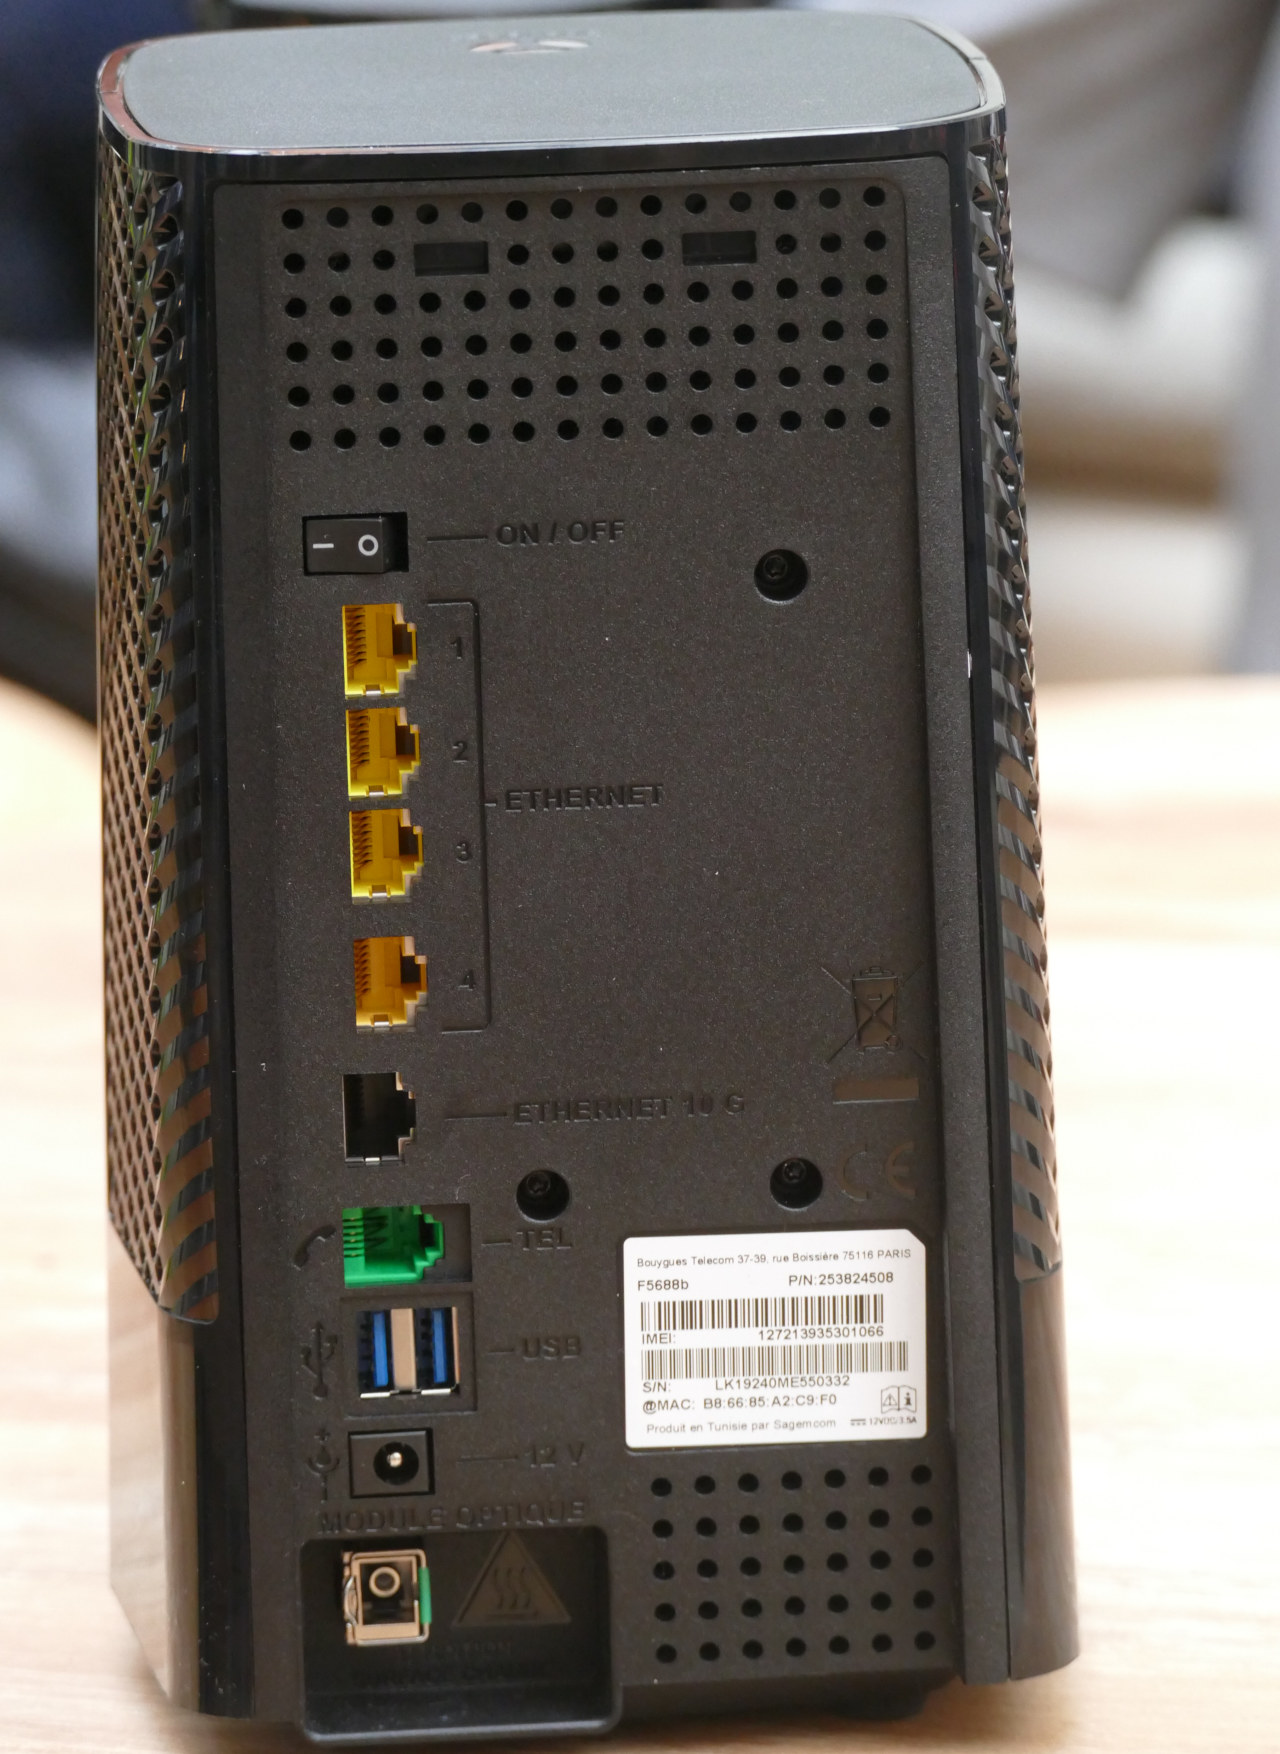 Installer répéteur Bbox fibre WiFi 6 - Assistance Bouygues Telecom